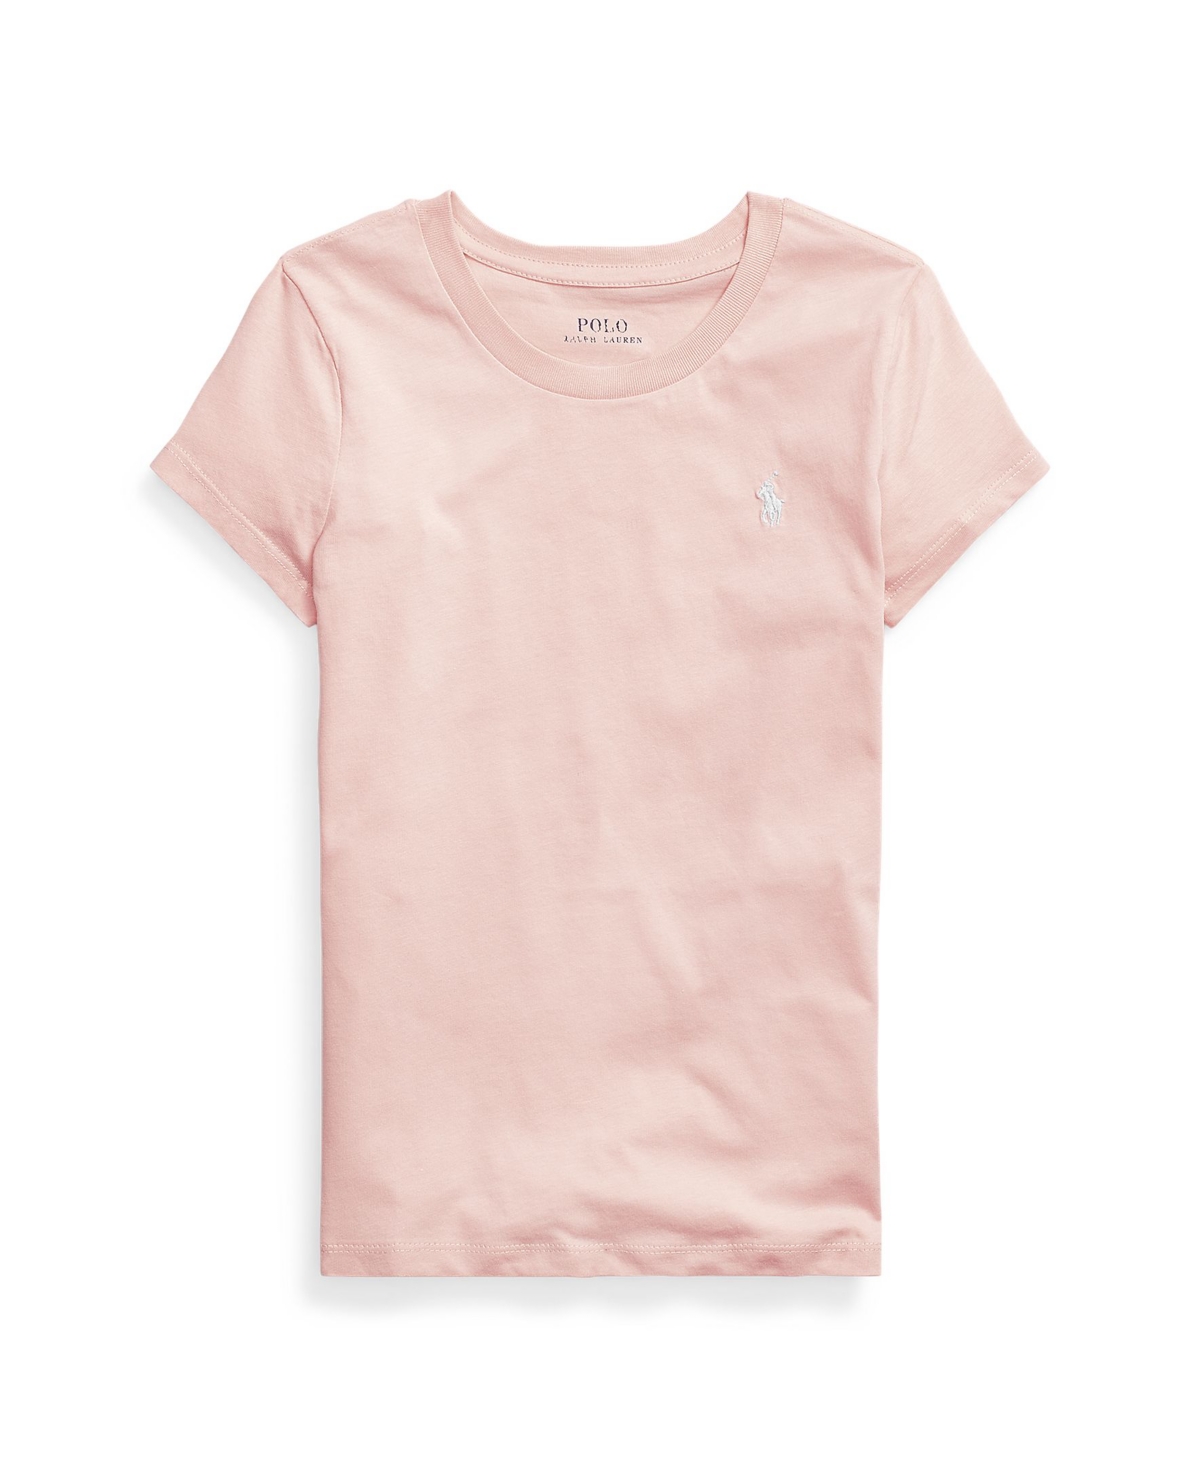 Polo Ralph Lauren Kids' Big Girls Cotton Jersey Short Sleeve T-shirt In Hint Of Pink